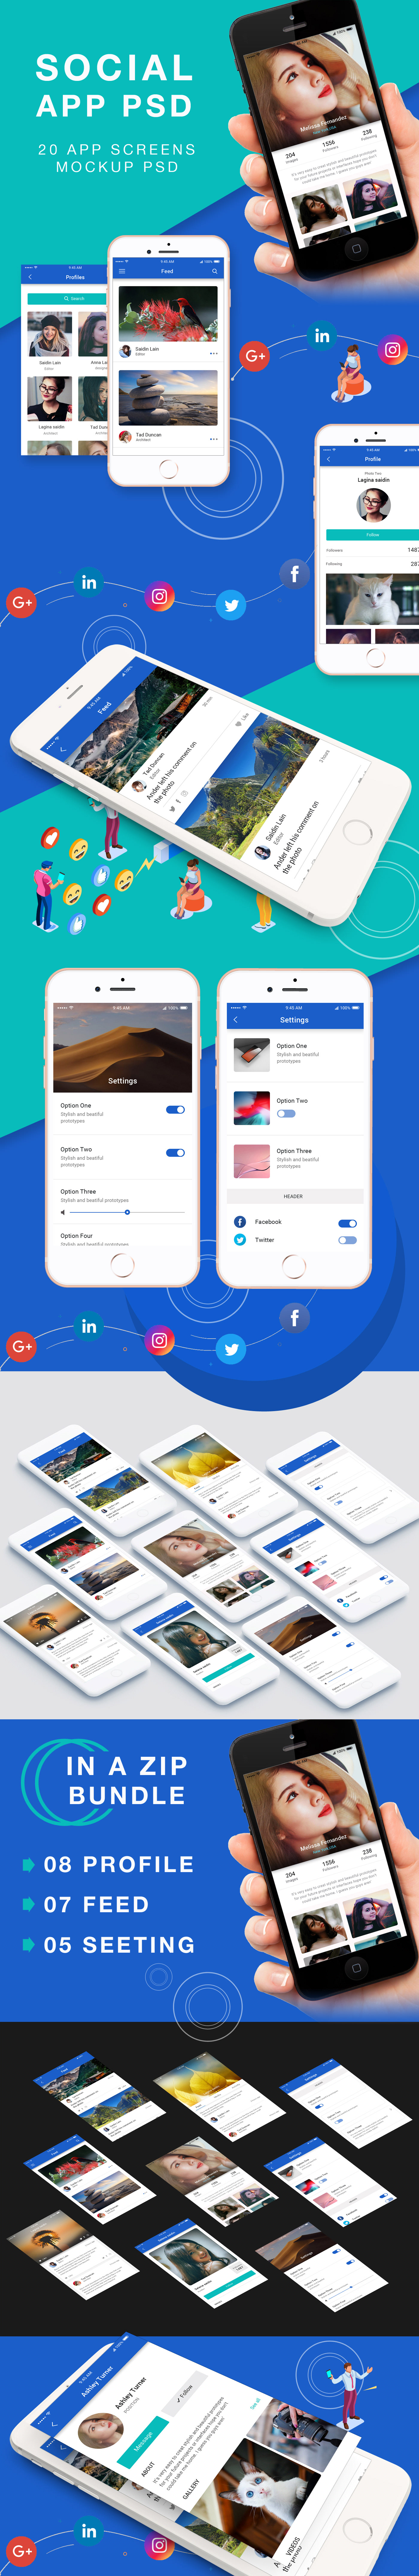 Material design UI for Social App on Behance